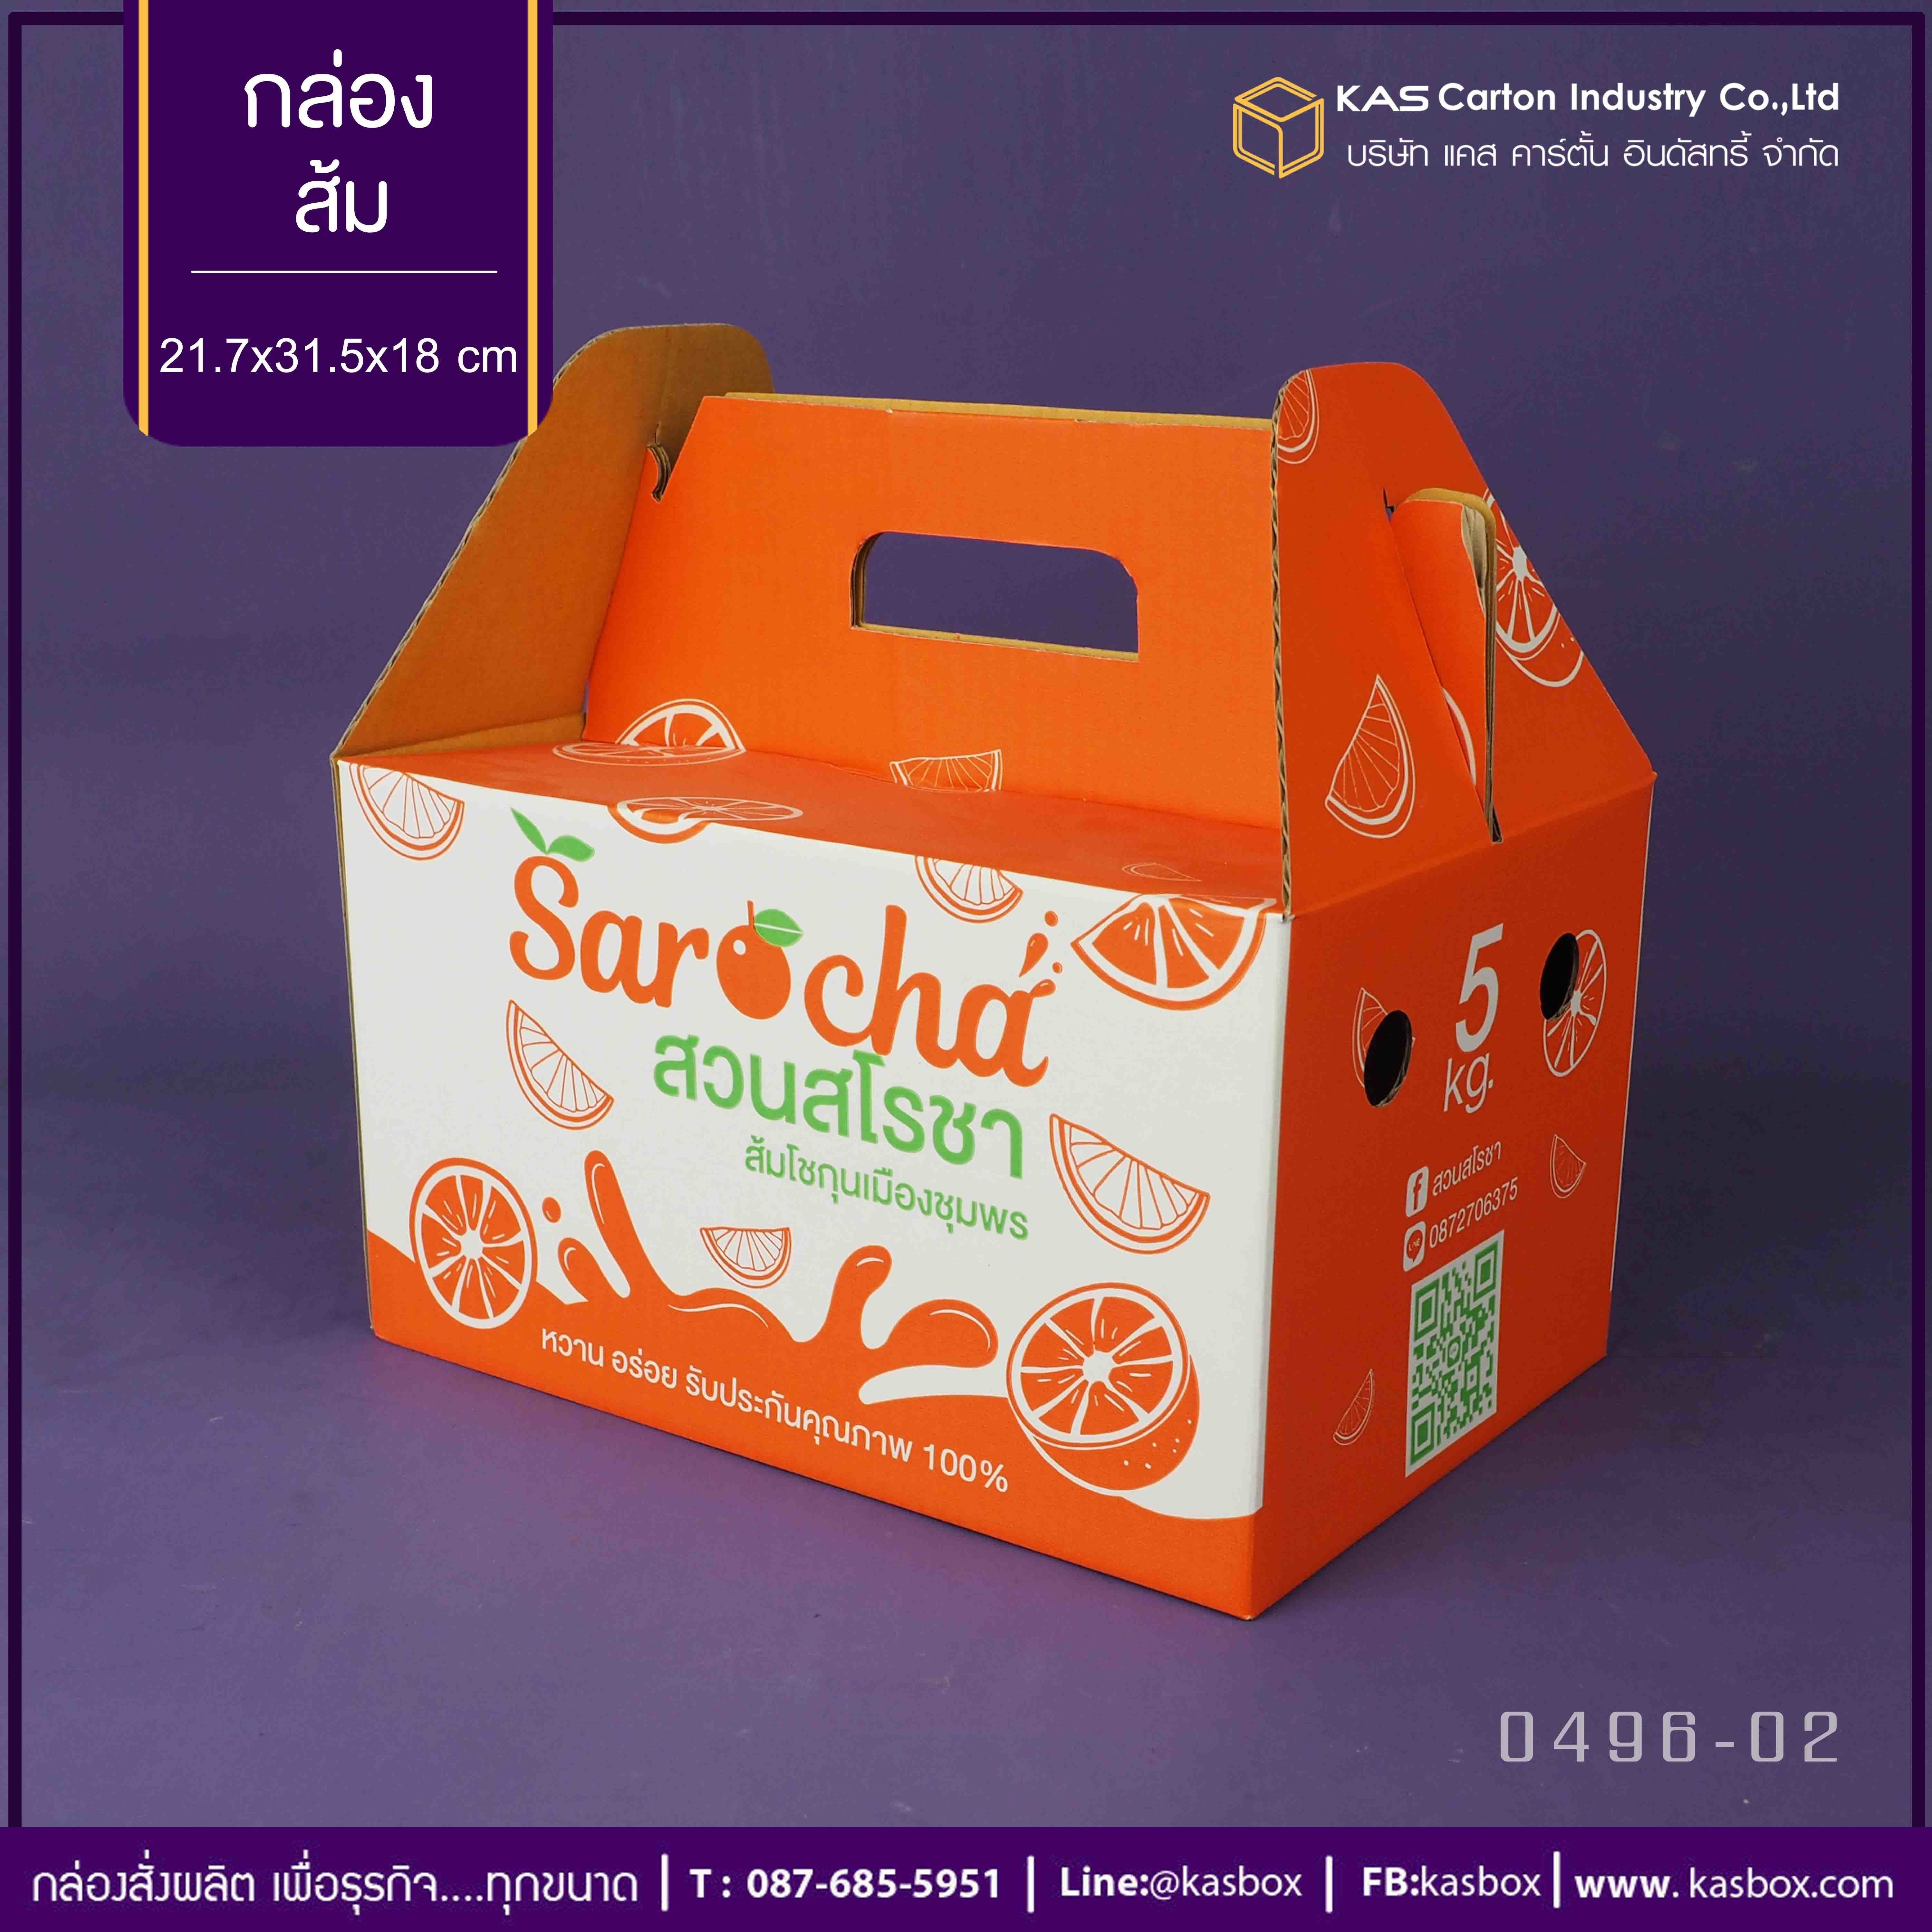 กล่องลูกฟูก สำเร็จรูป และ สั่งผลิต ตามความต้องการลูกค้า กล่องลูกฟูก SME กล่องกระดาษลูกฟูก กล่องผลไม้ บรรจุส้ม Sarocha